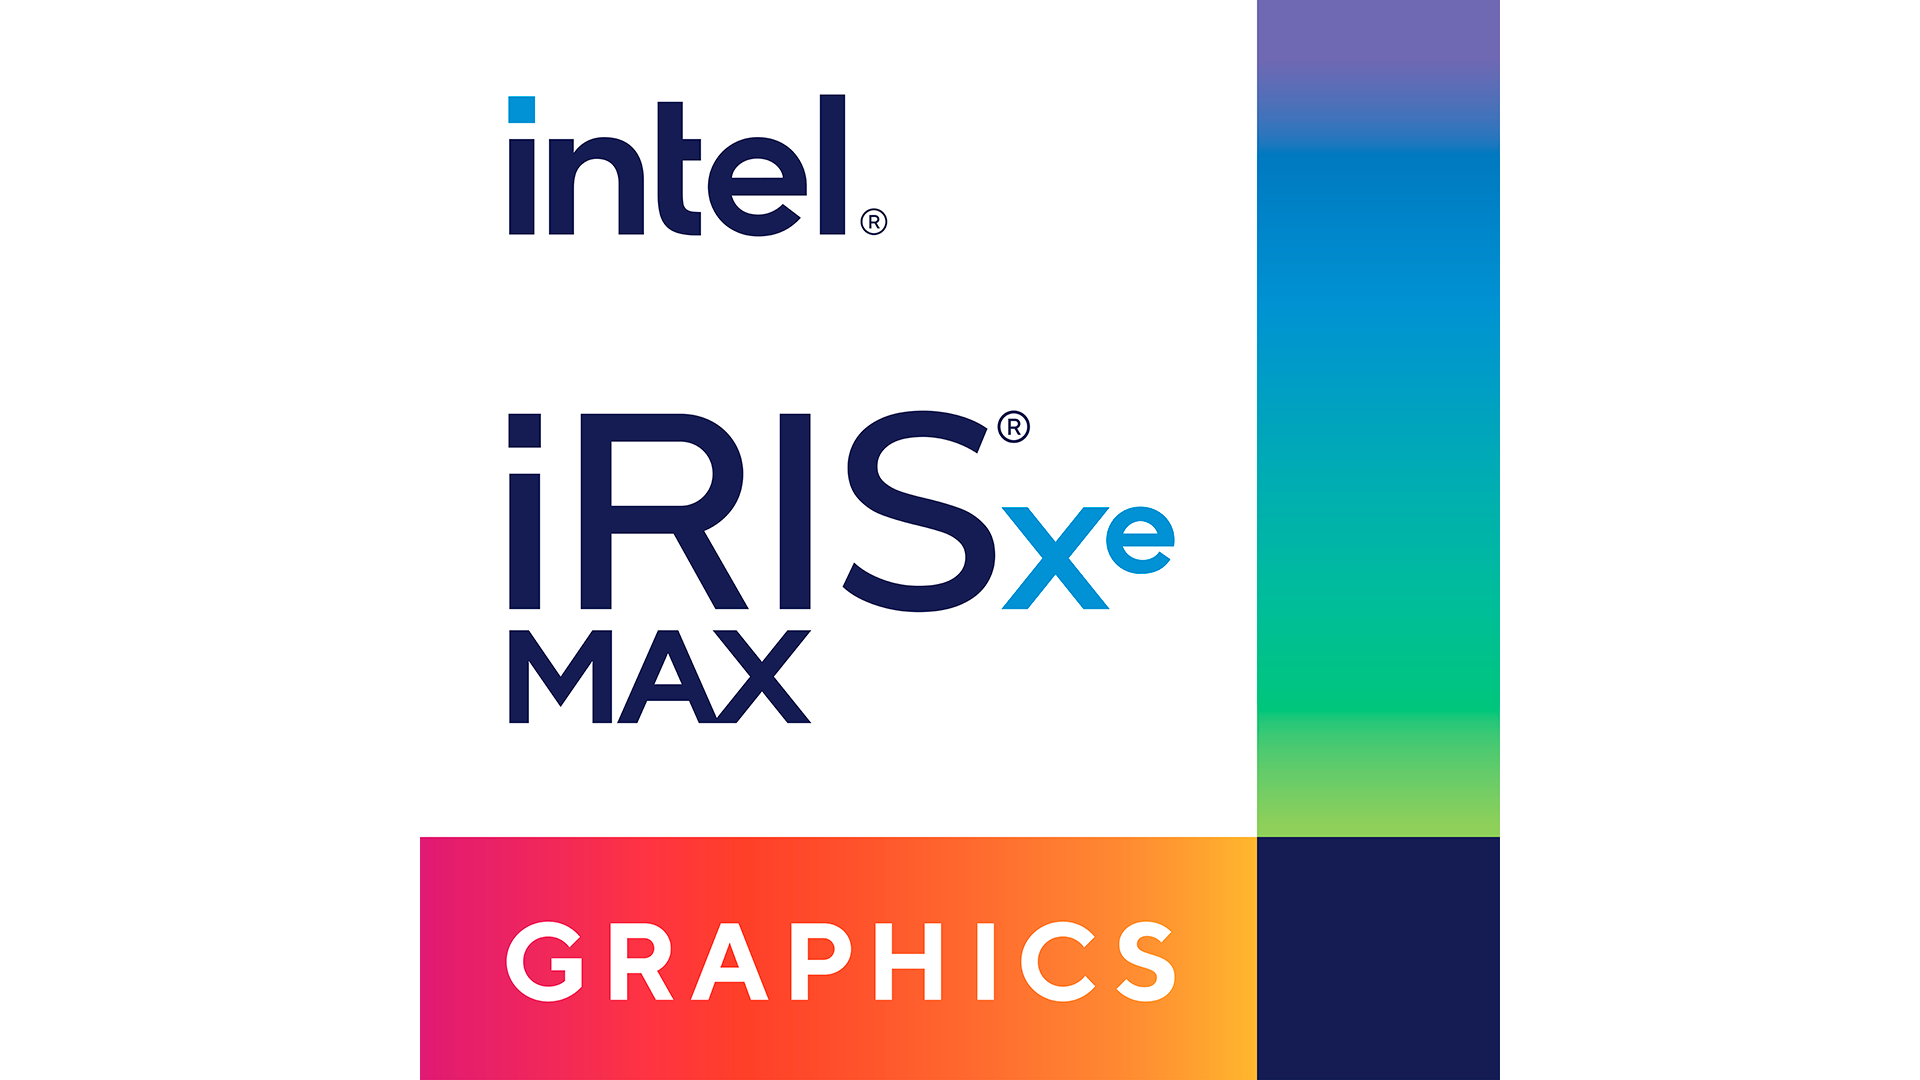 インテル® Iris® Xᵉ MAX 専用グラフィックス・ファミリー